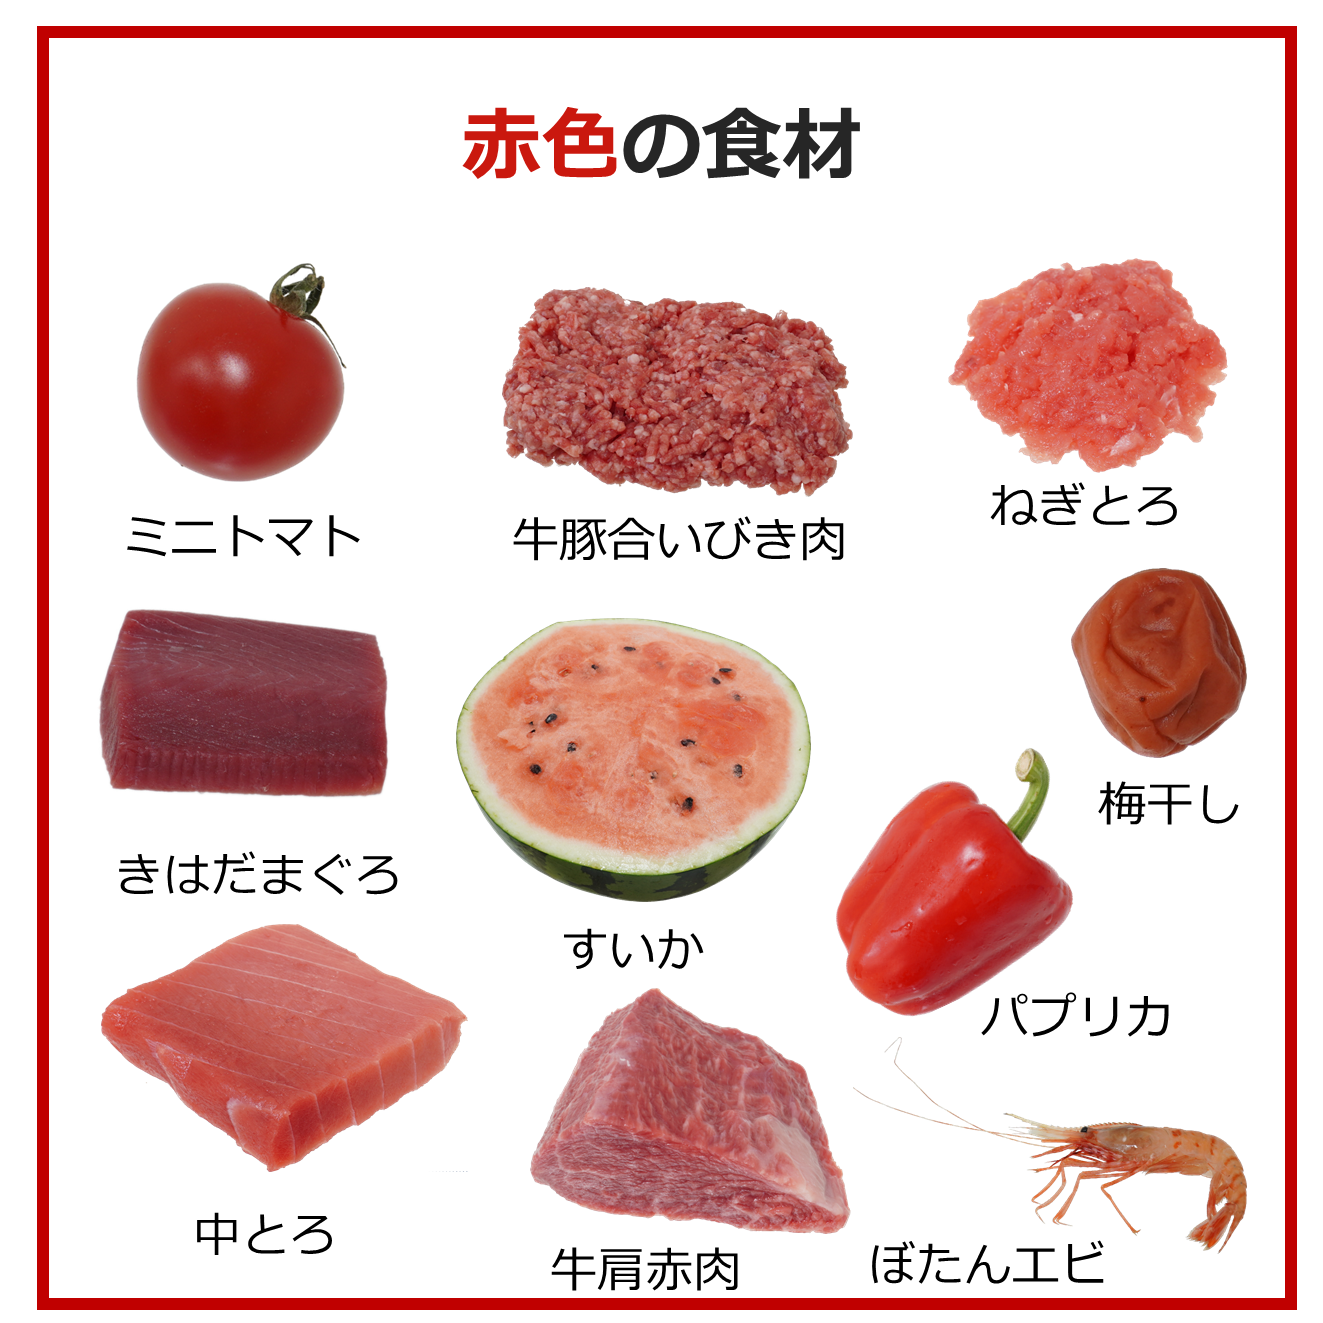 色別食材 赤色 食品画像のそざい屋さん 商用可の食べ物フリー画像配布サイト